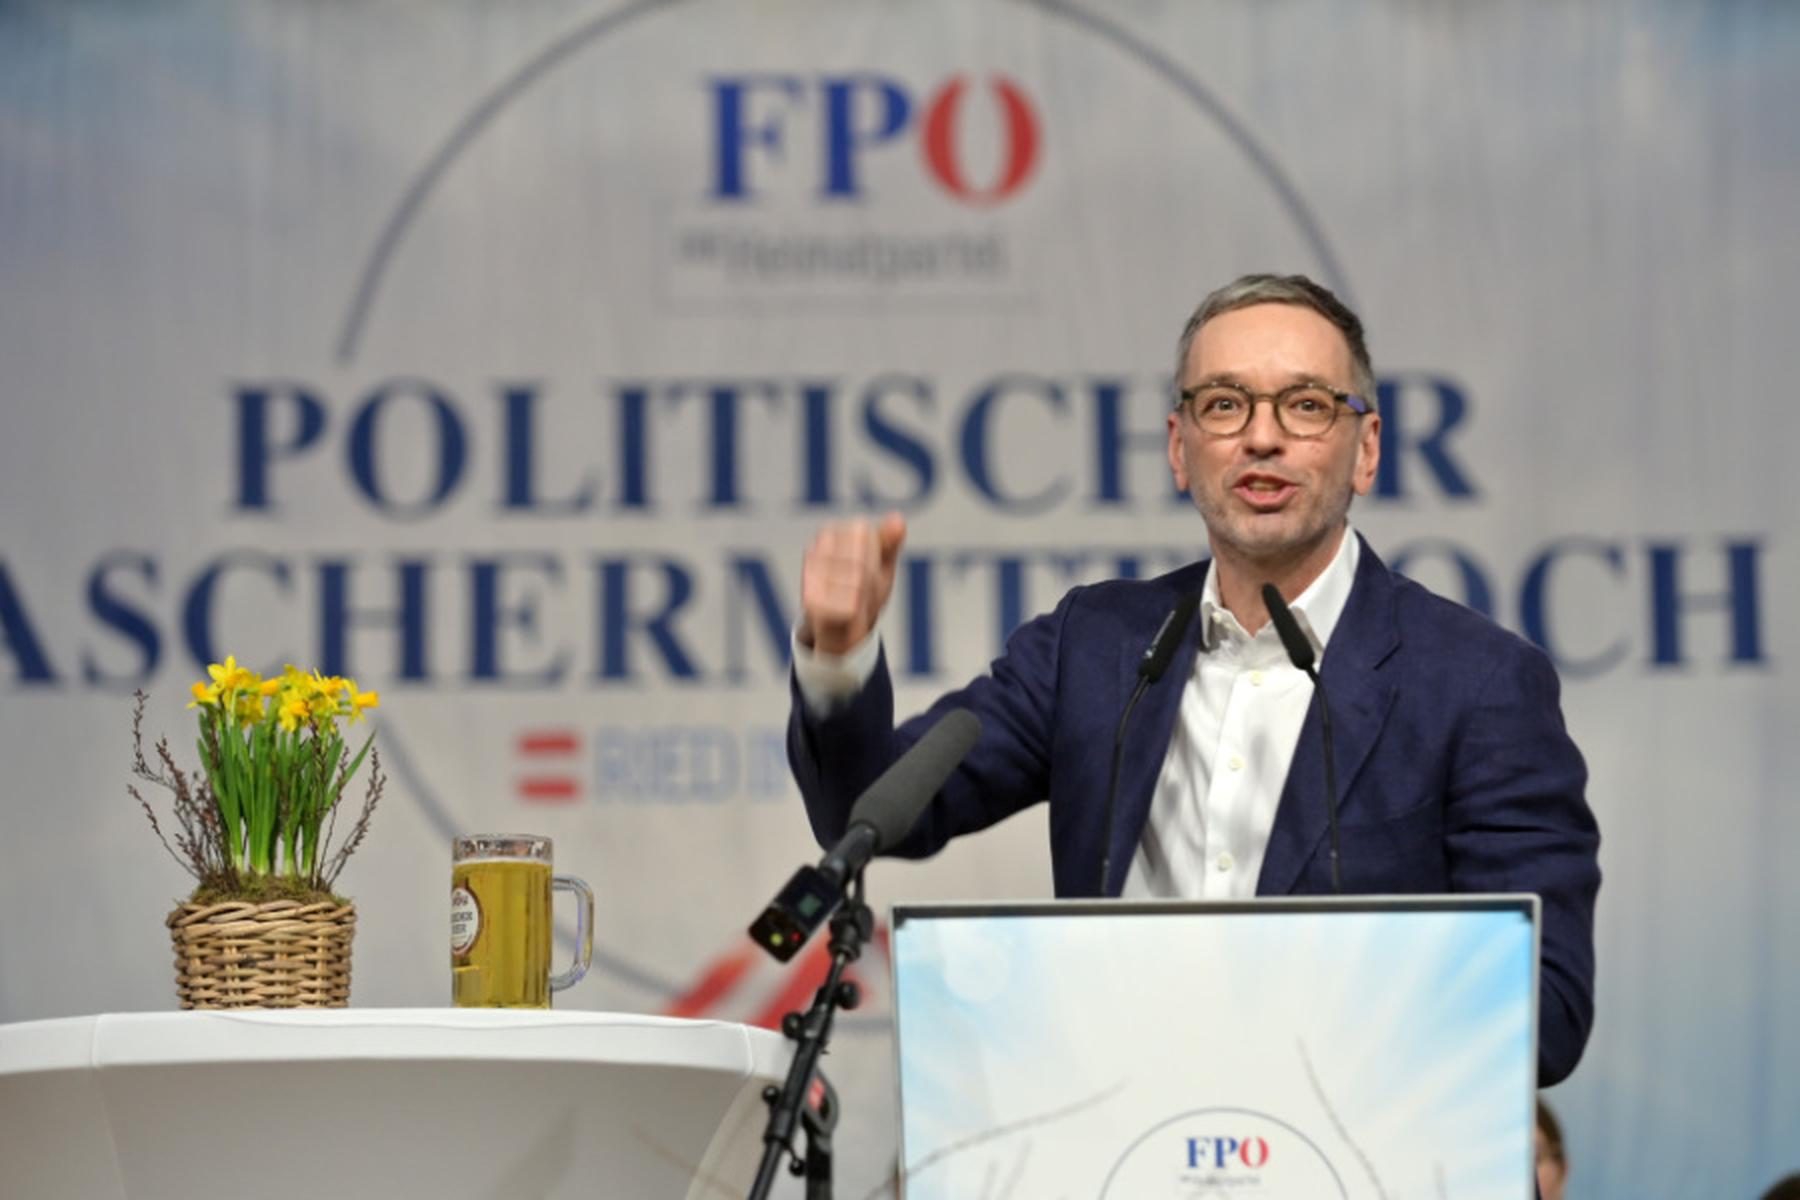 Ried im Innkreis/Klagenfurt/Kobenz | FPÖ, ÖVP und SPÖ rechnen am politischen Aschermittwoch ab